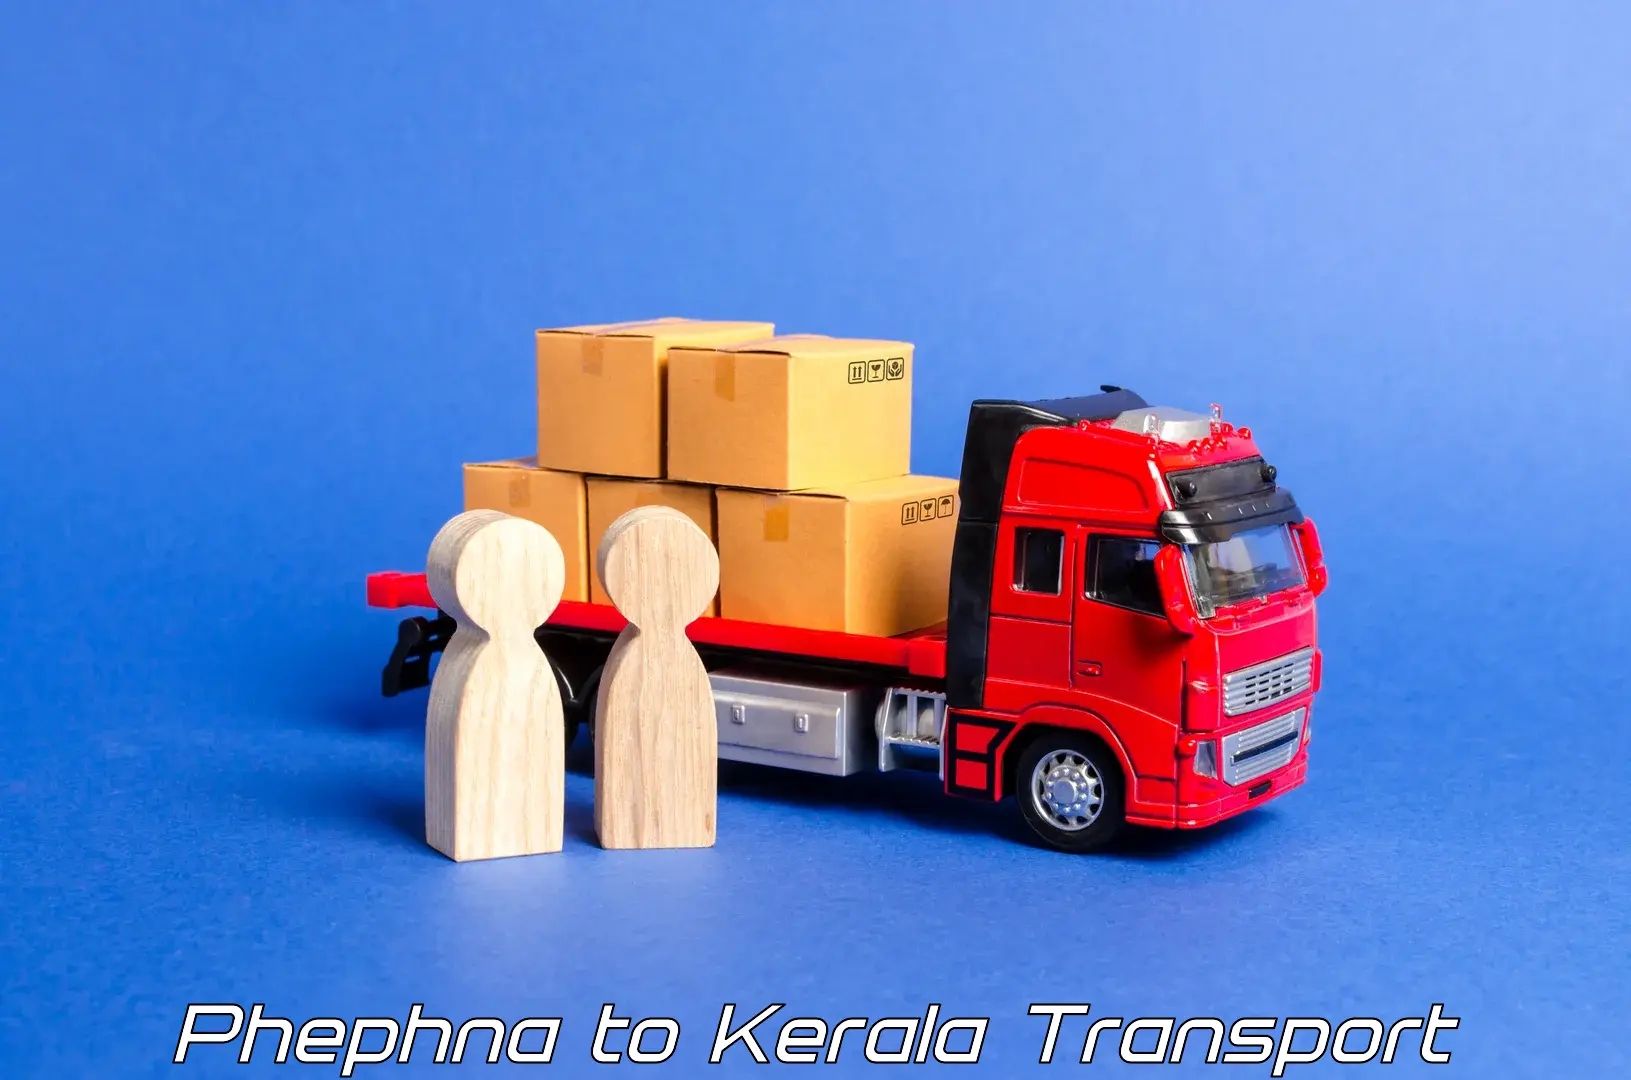 Cargo transport services Phephna to Pallikkara